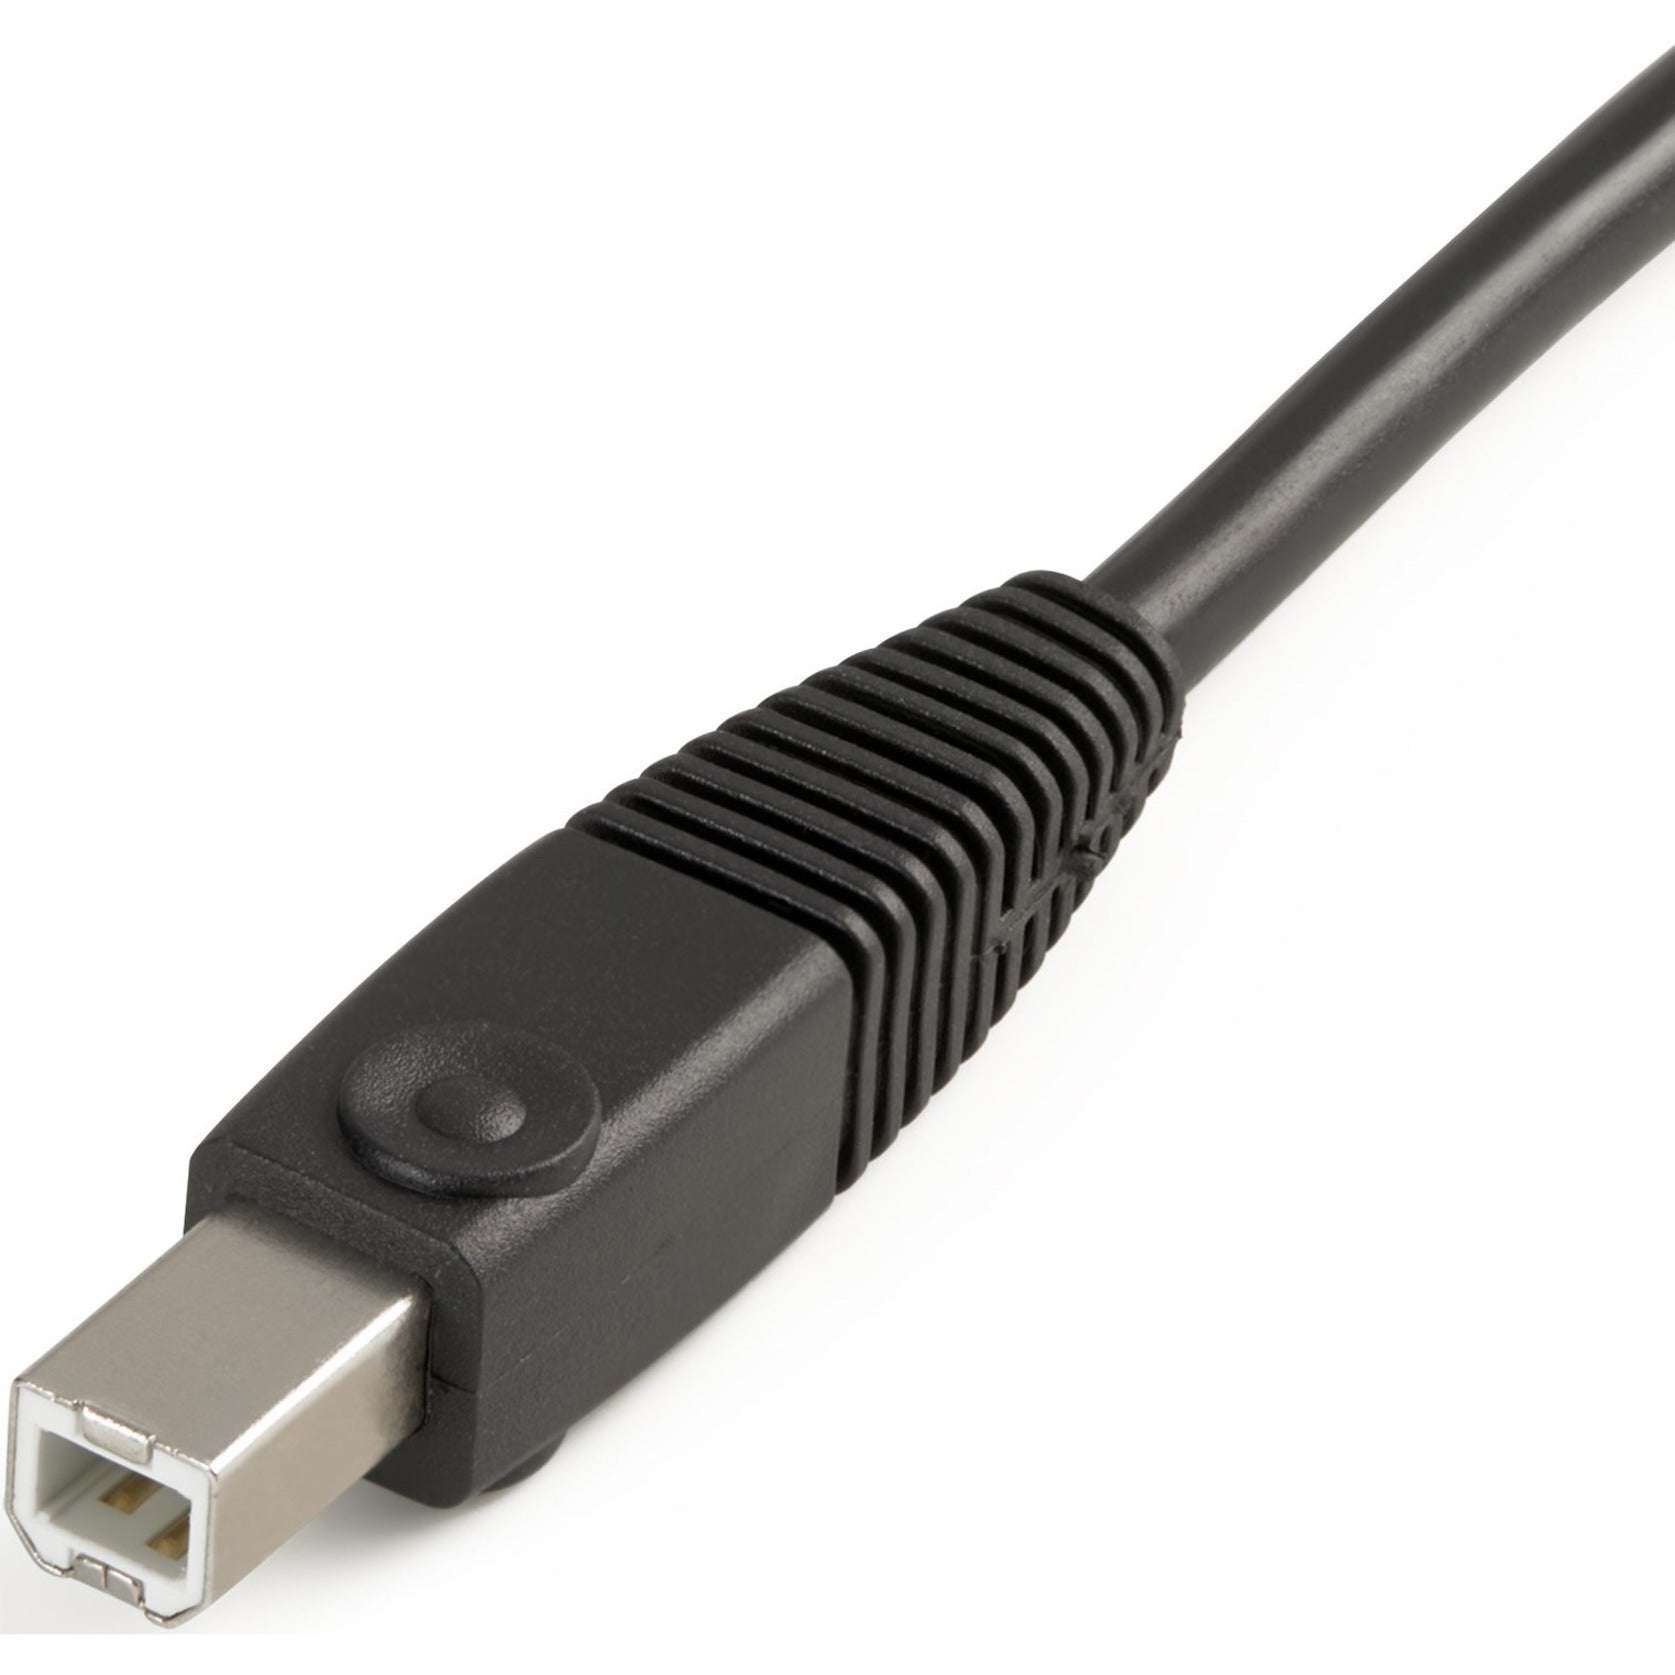 StarTech.com USBDVI4N1A10 10 ft 4-en-1 cable KVM USB DVI con audio conductor de cobre resolución admitida de 1920 x 1200 negro.   Marca: StarTech.com  Traducción de la marca: EstrellaTecnología.